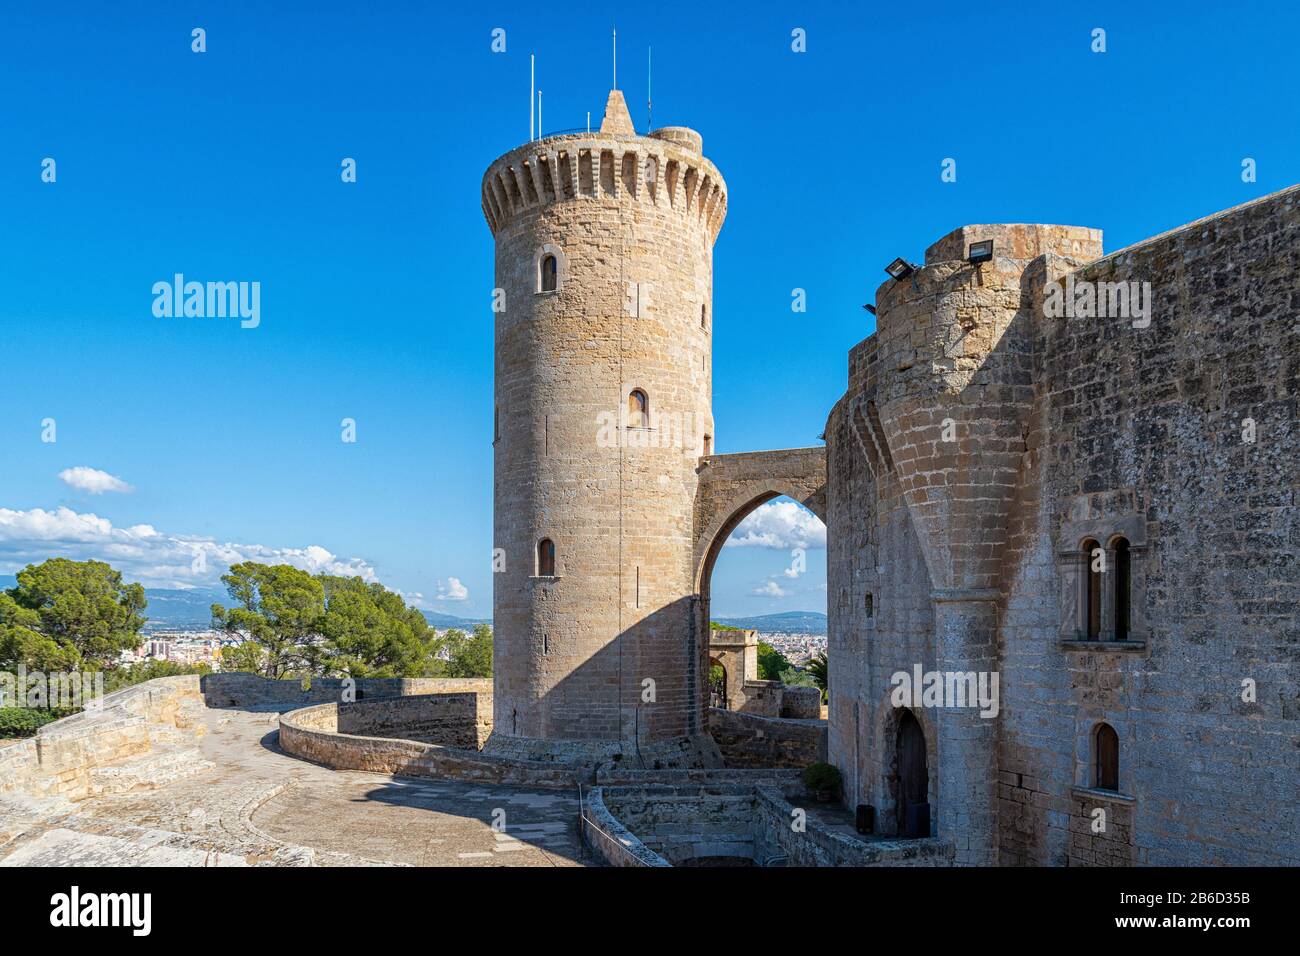 The castell de Bellver in Palma de Mallorca Stock Photo